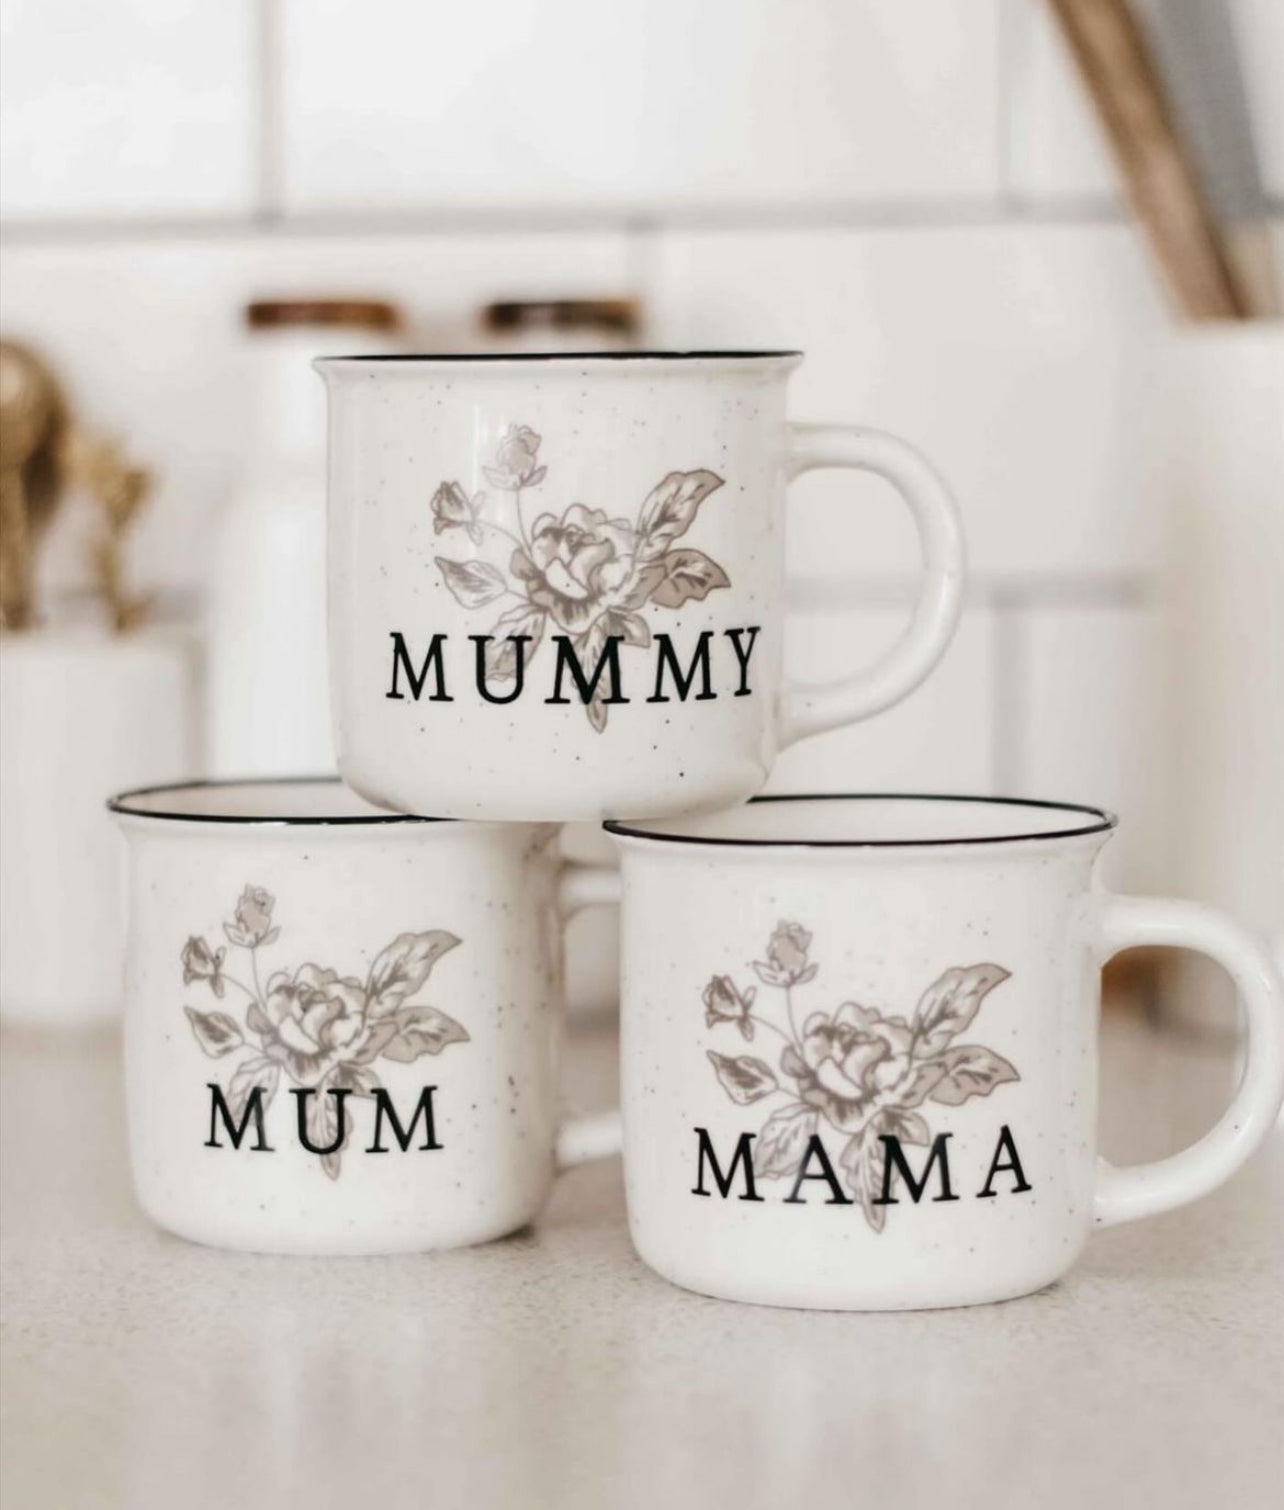 Mummy Ceramic Mug